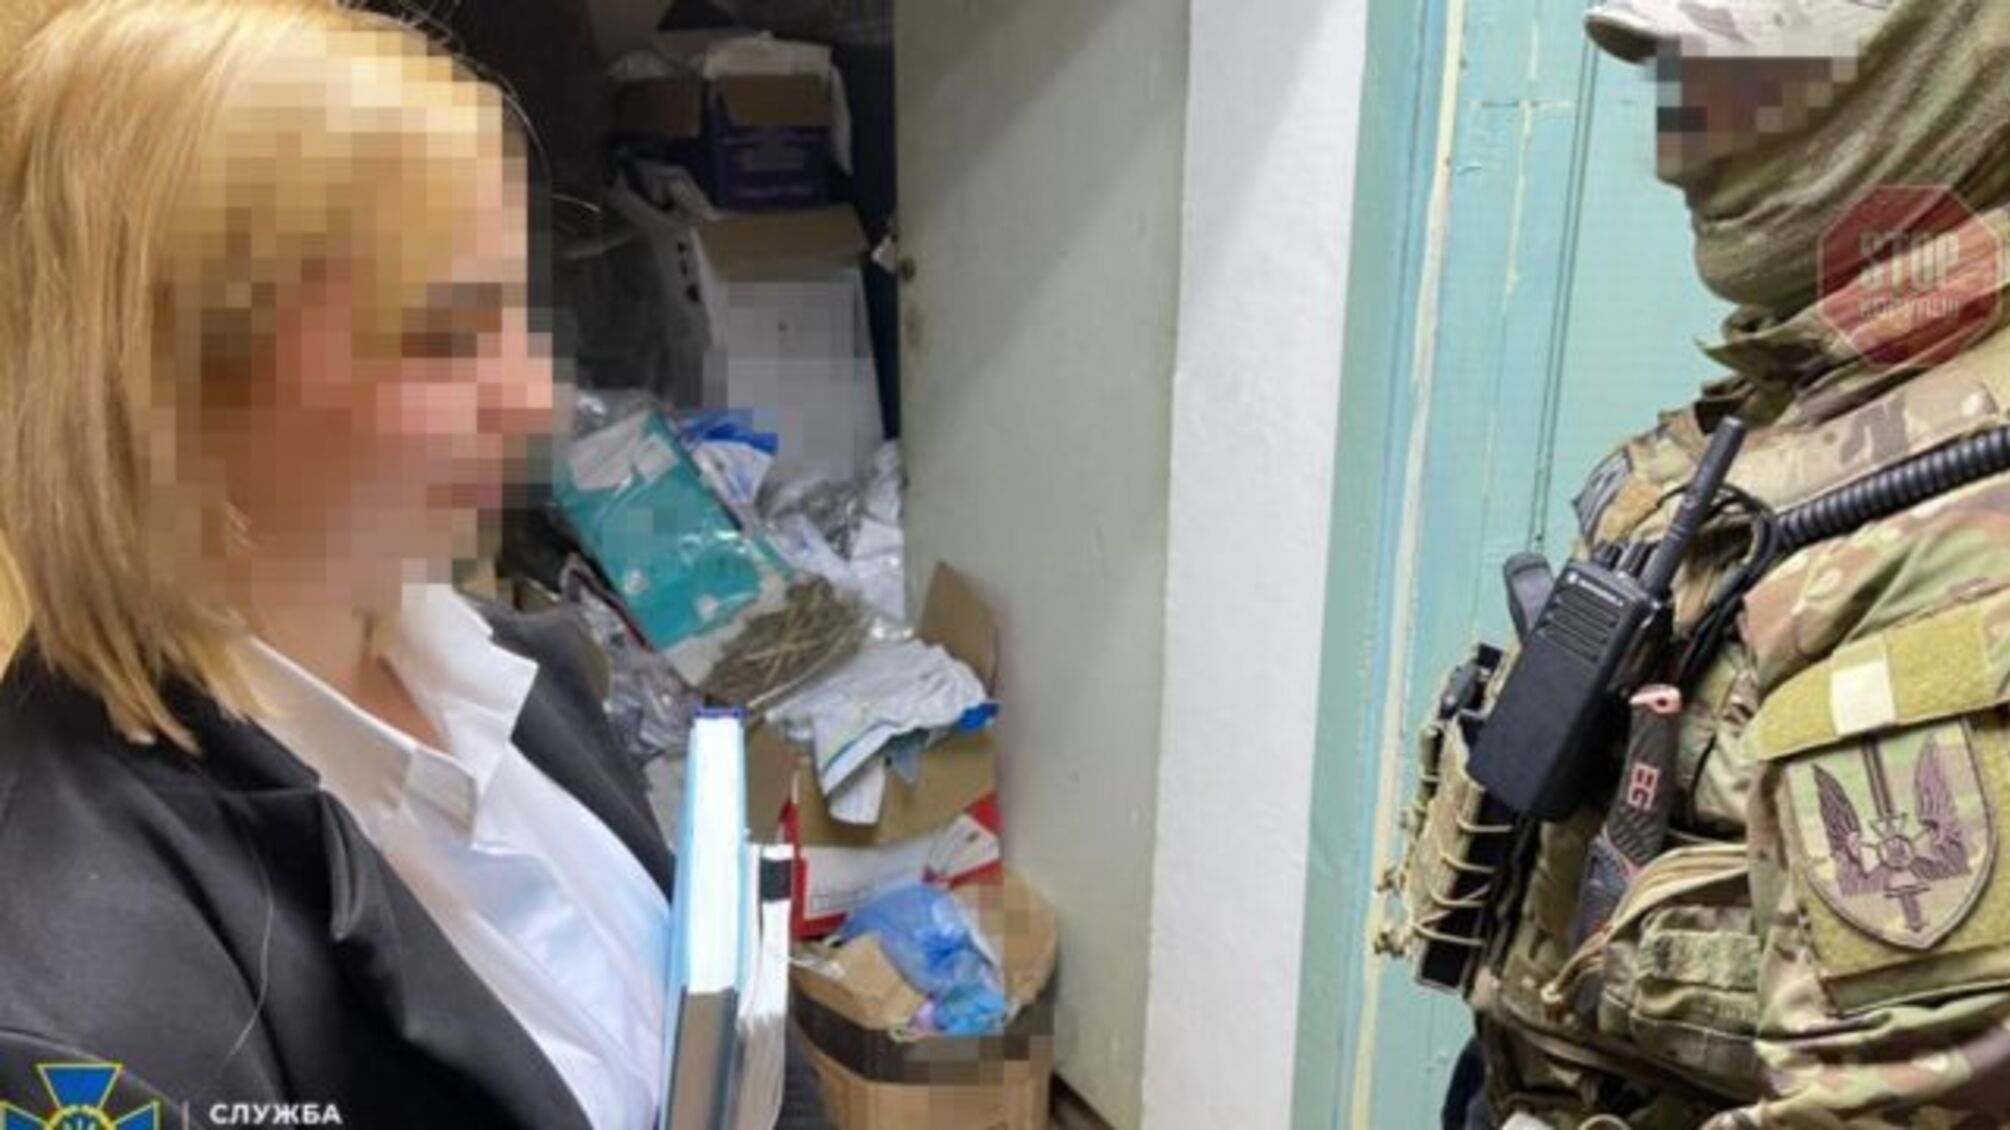 Одесская полицейская будет сидит без залога за кражу пол кг кокаина, которые были вещдоком